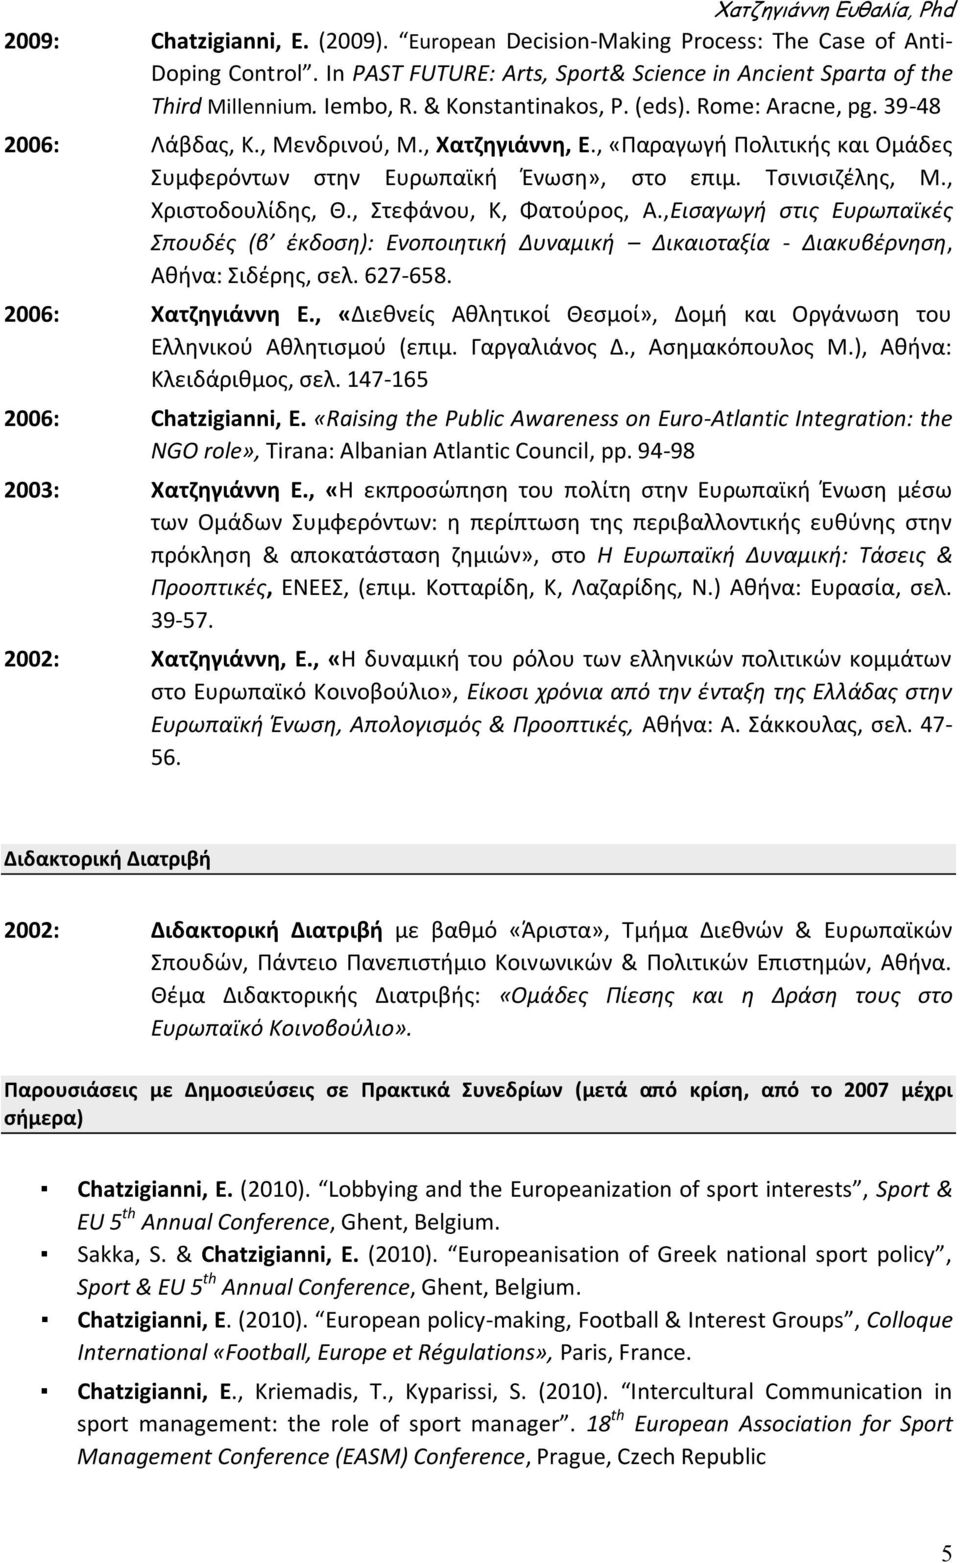 , Χριςτοδουλίδθσ, Θ., τεφάνου, Κ, Φατοφροσ, Α.,Ειςαγωγι ςτισ Ευρωπαϊκζσ Σπουδζσ (β ζκδοςθ): Ενοποιθτικι Δυναμικι Δικαιοταξία - Διακυβζρνθςθ, Ακινα: ιδζρθσ, ςελ. 627-658. 2006: Χατηθγιάννθ Ε.